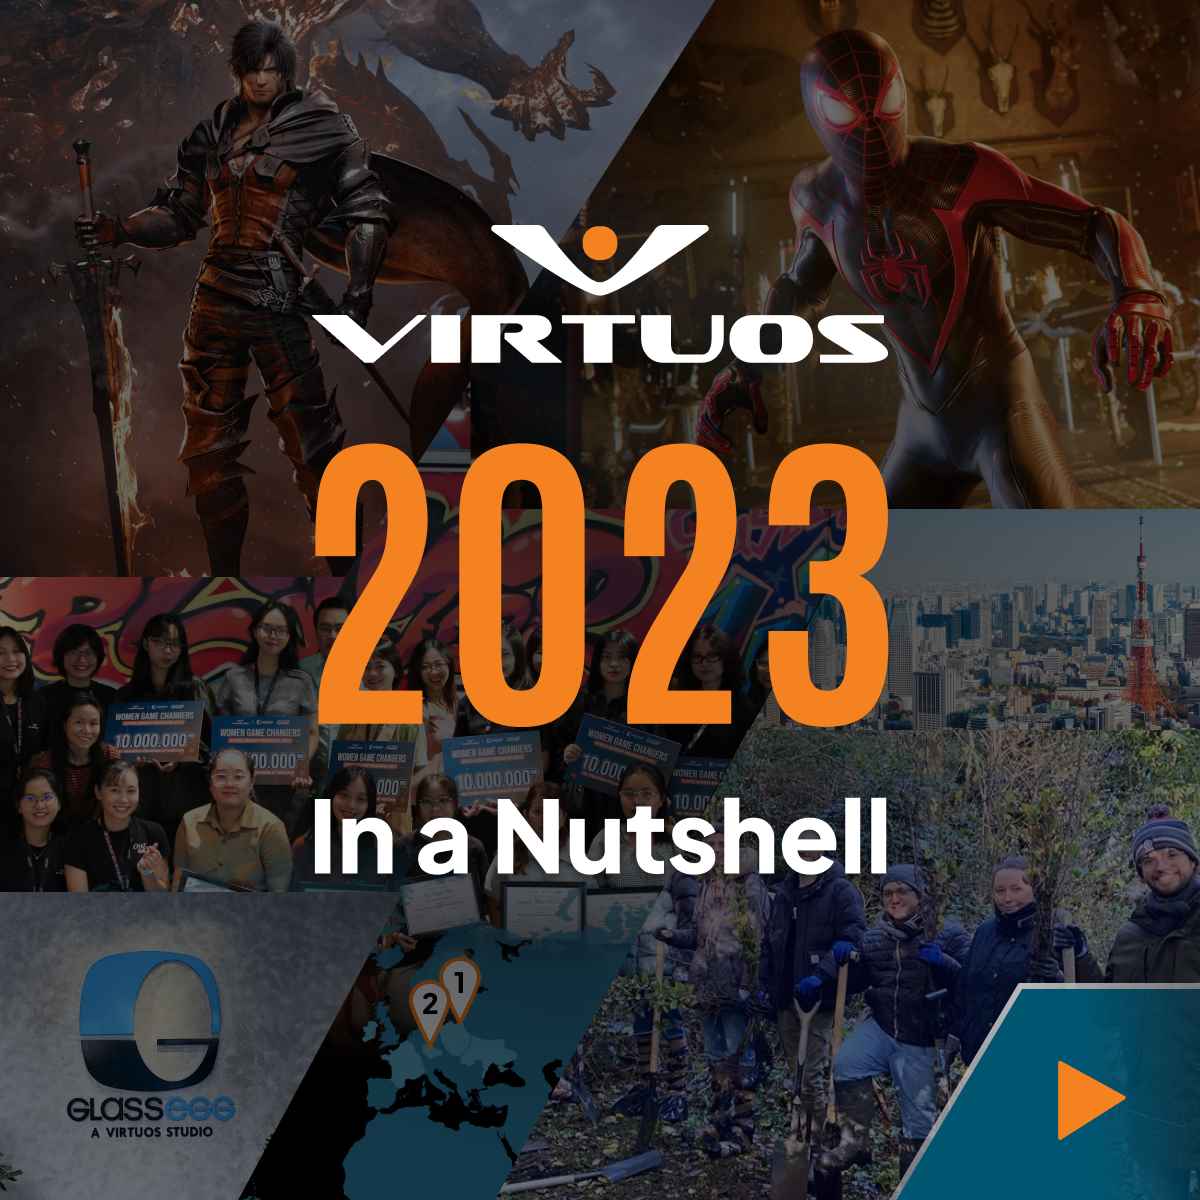 Toàn cảnh Virtuos: Điểm nhấn của năm 2023